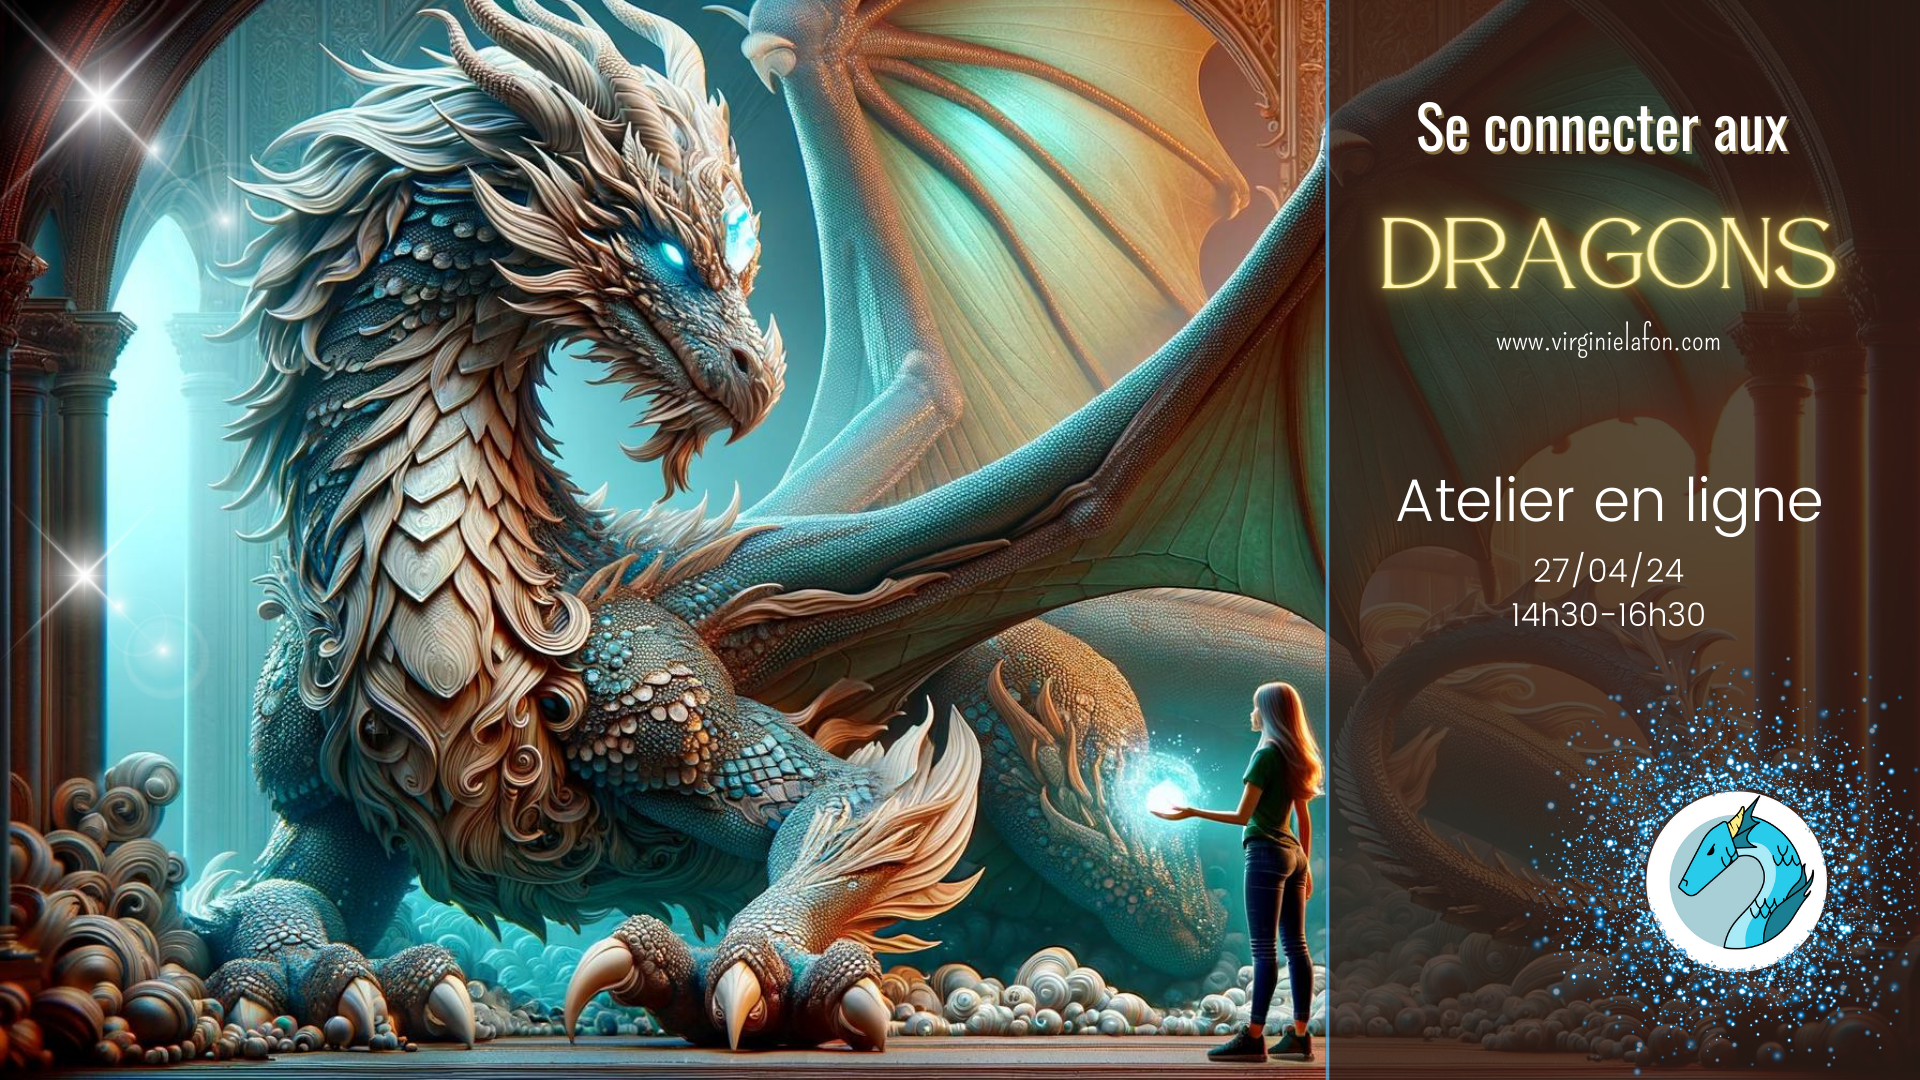 Se Connecter aux Dragons event cover photo